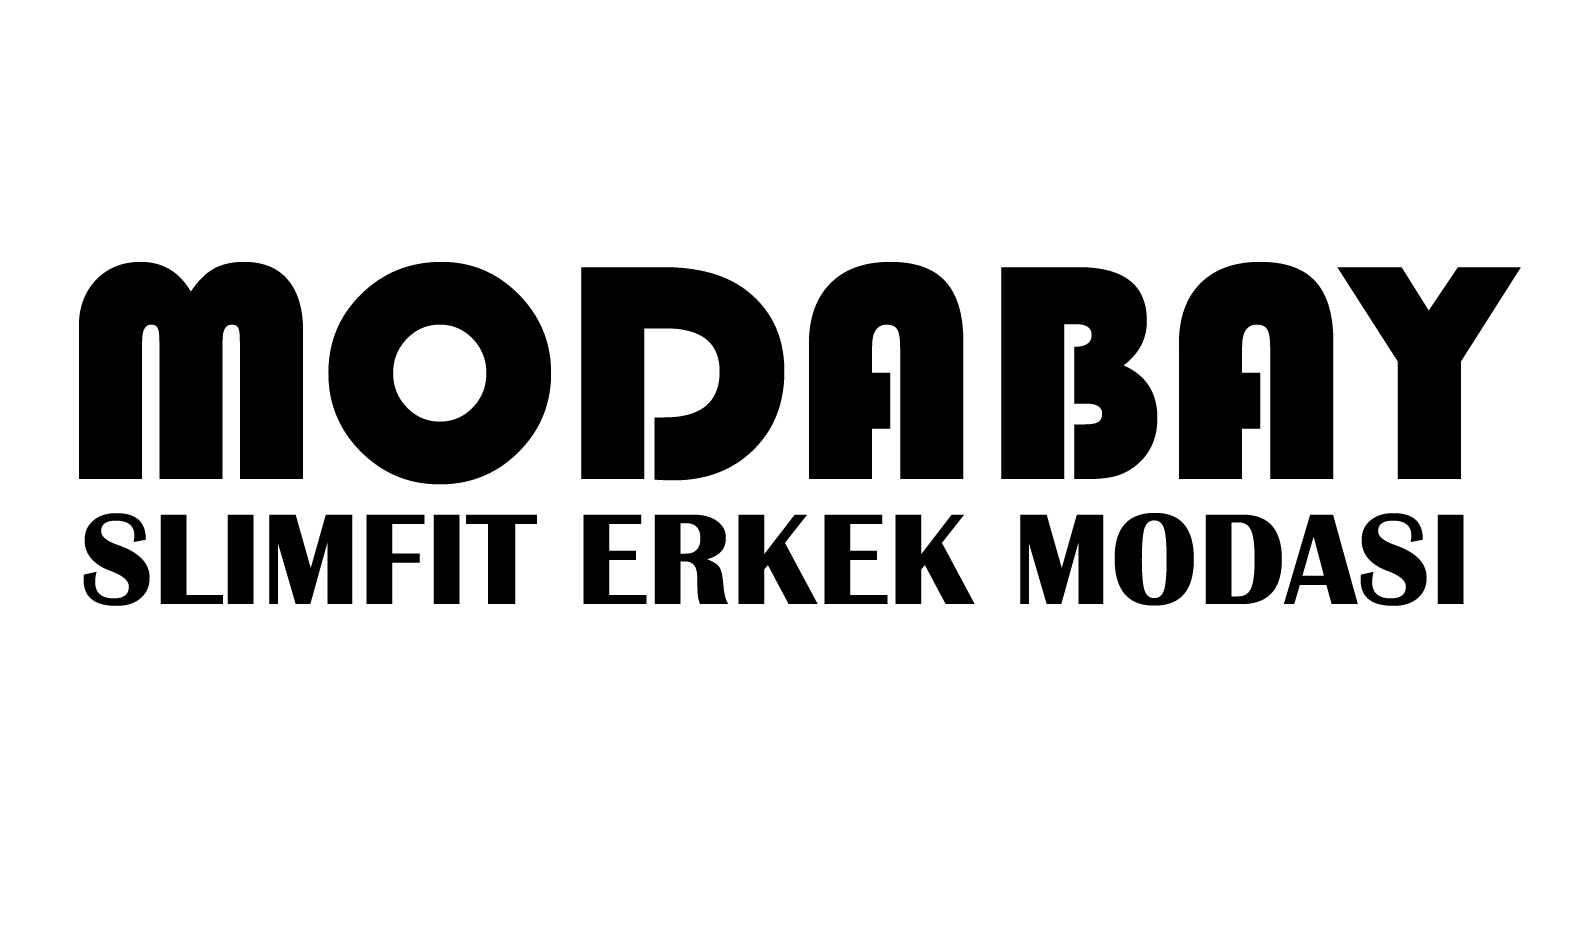 modabay